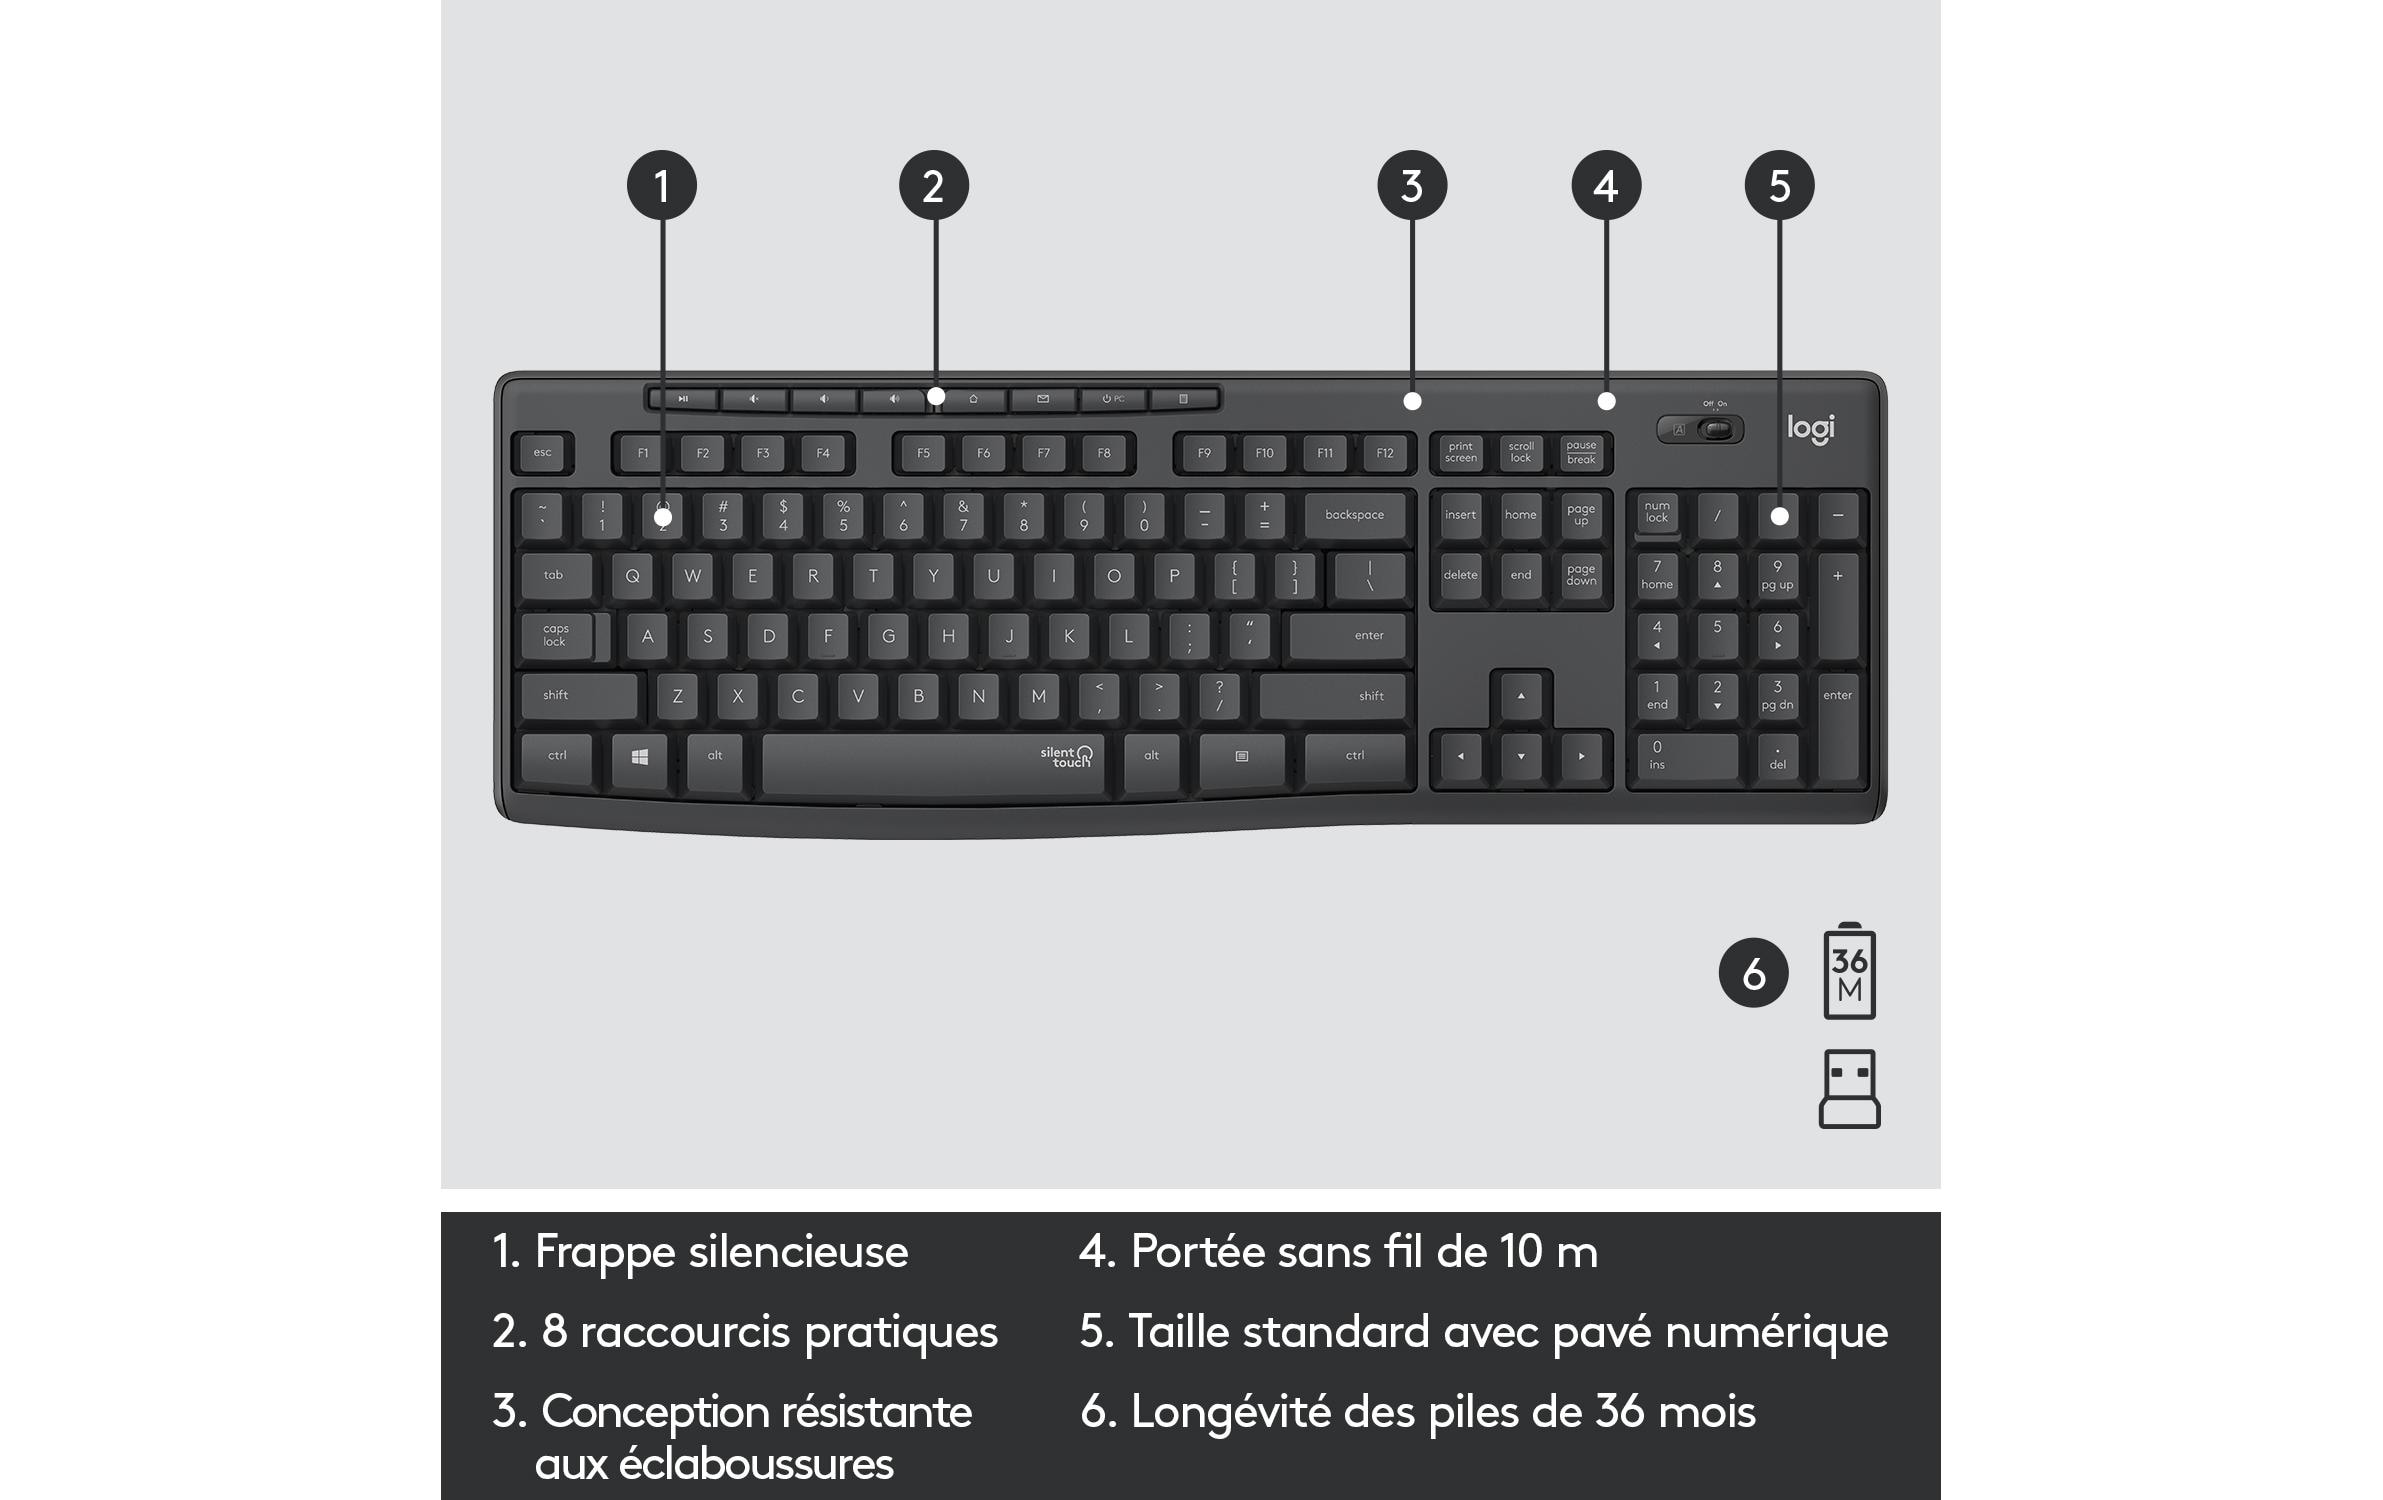 Logitech Tastatur-Maus-Set MK295 Graphite CH-Layout